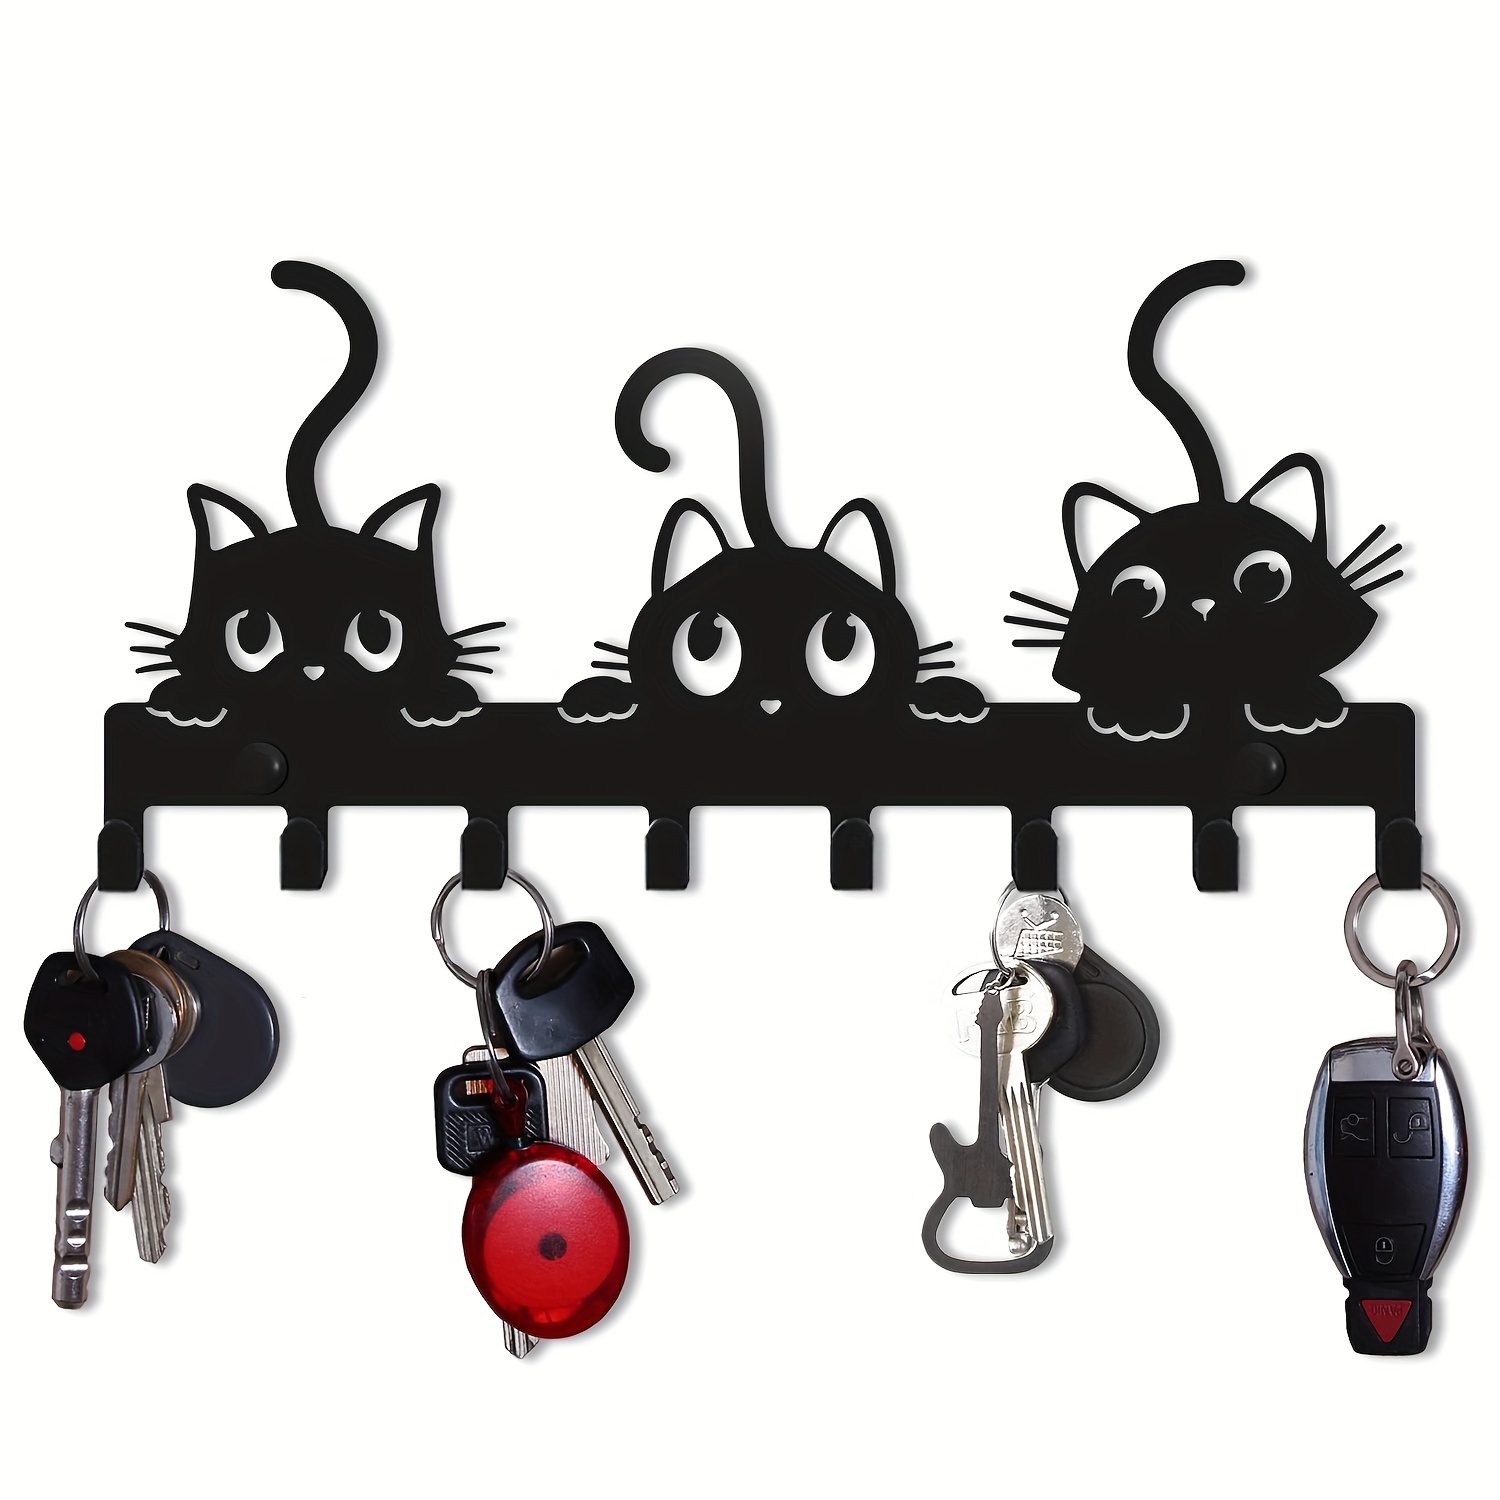 5pcs Creative Adhesive Coat Hook,cute Cat Key Holder Hook,wall